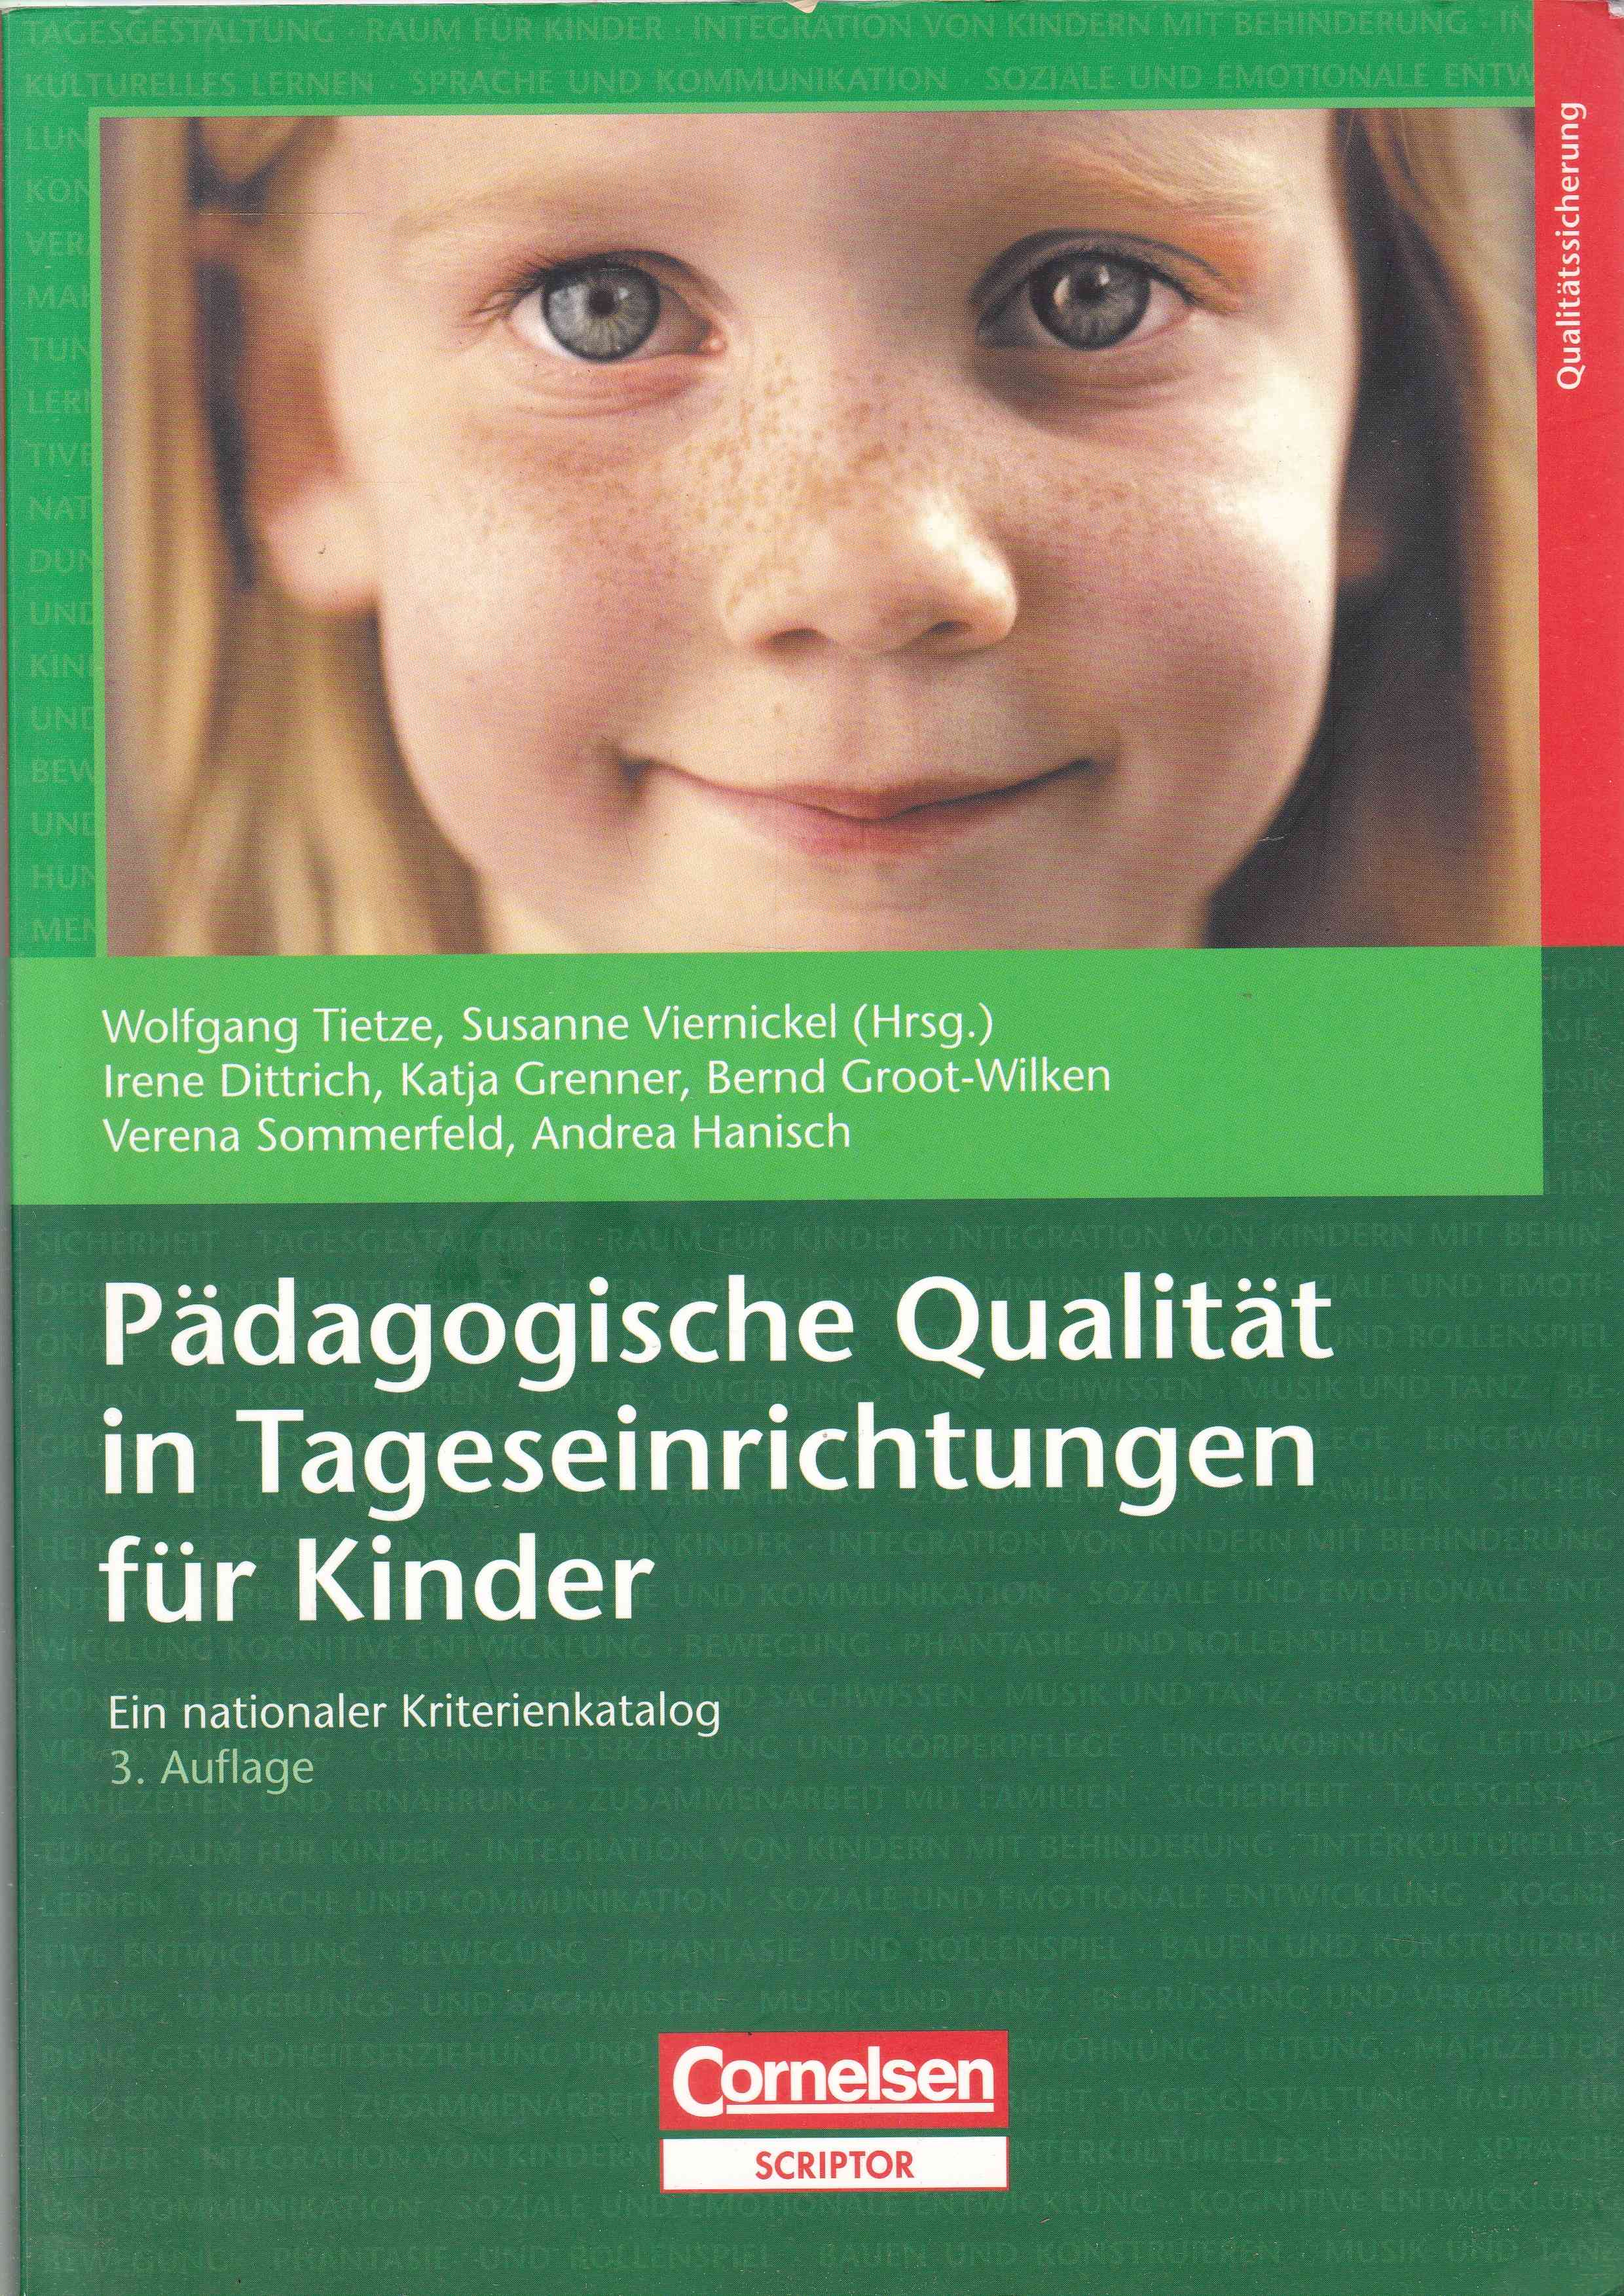 Pädagogische Qualität in Tageseinrichtungen für Kinder. Ein nationaler Kriterienkatalog - Tietze, Wolfgang / Susanne Viernickel (Hrsg.)